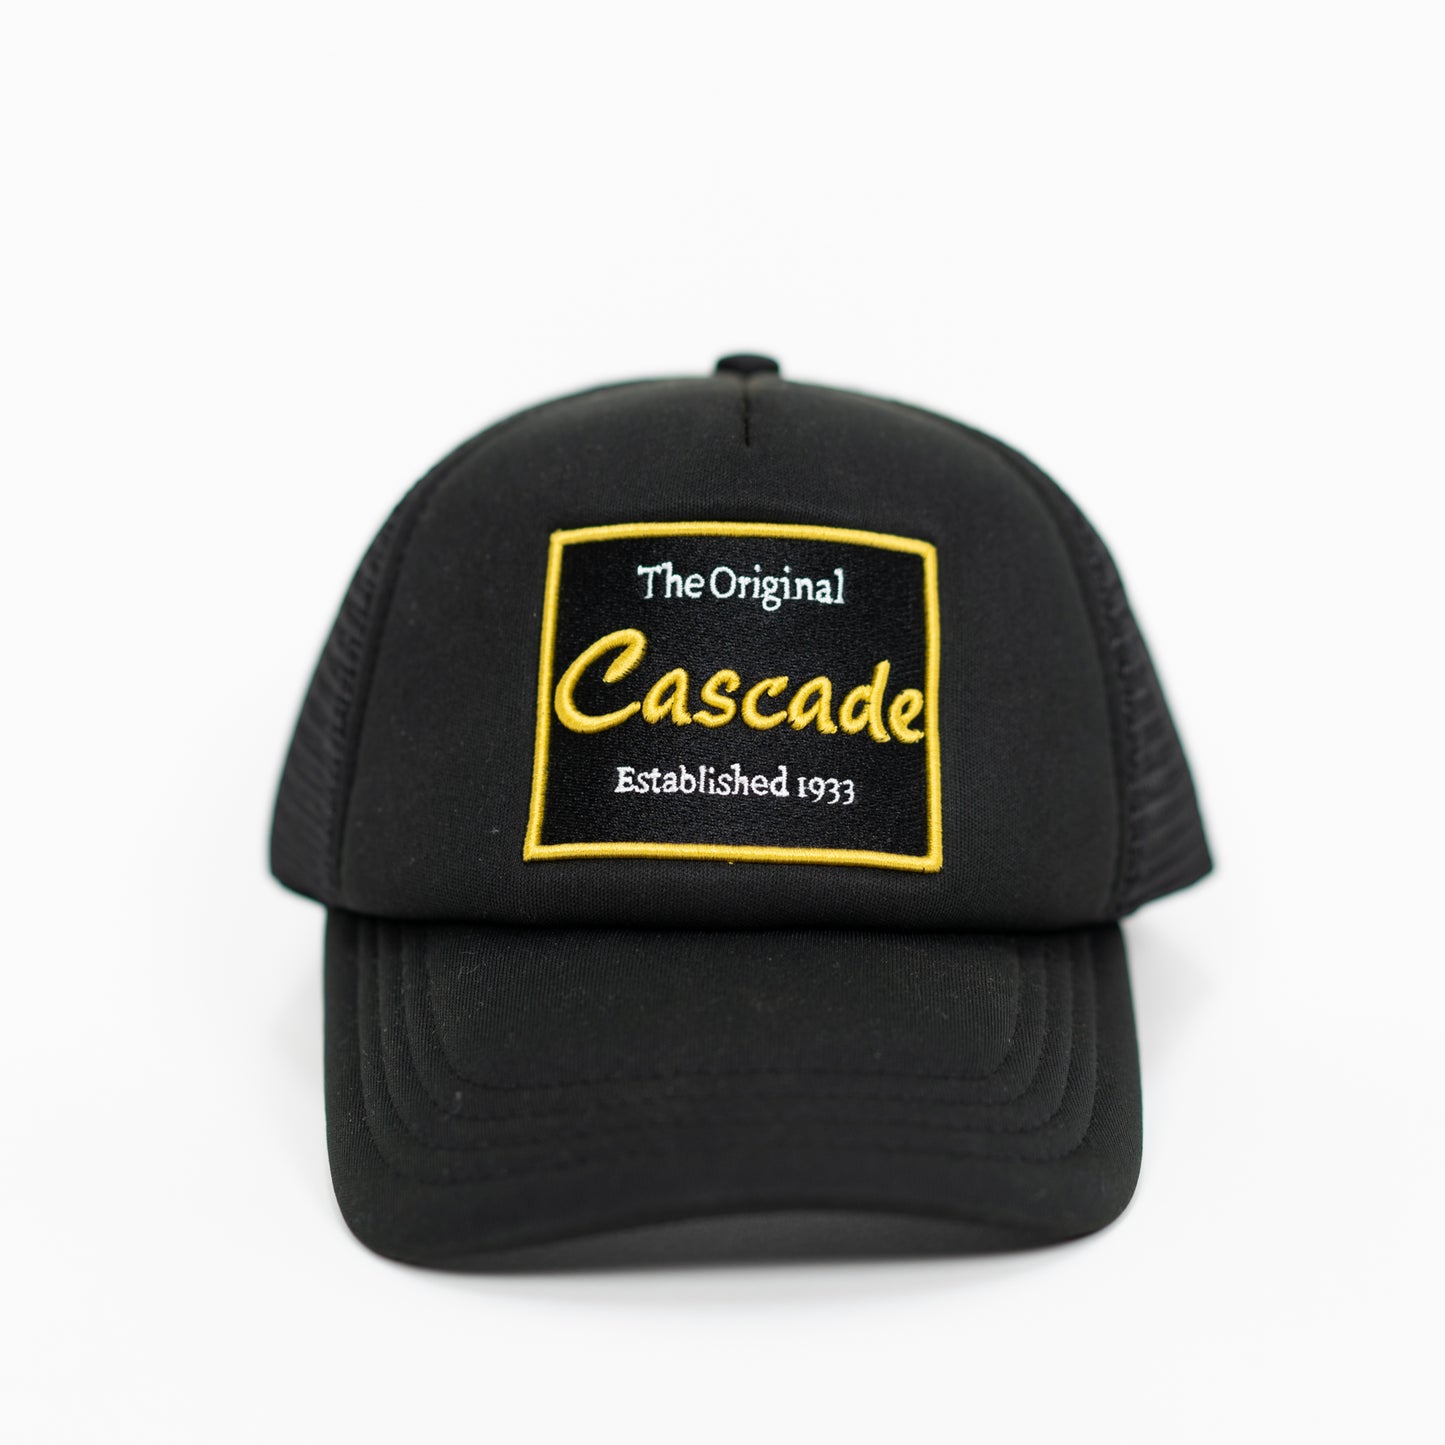 The Original Cascade Trucker Hat